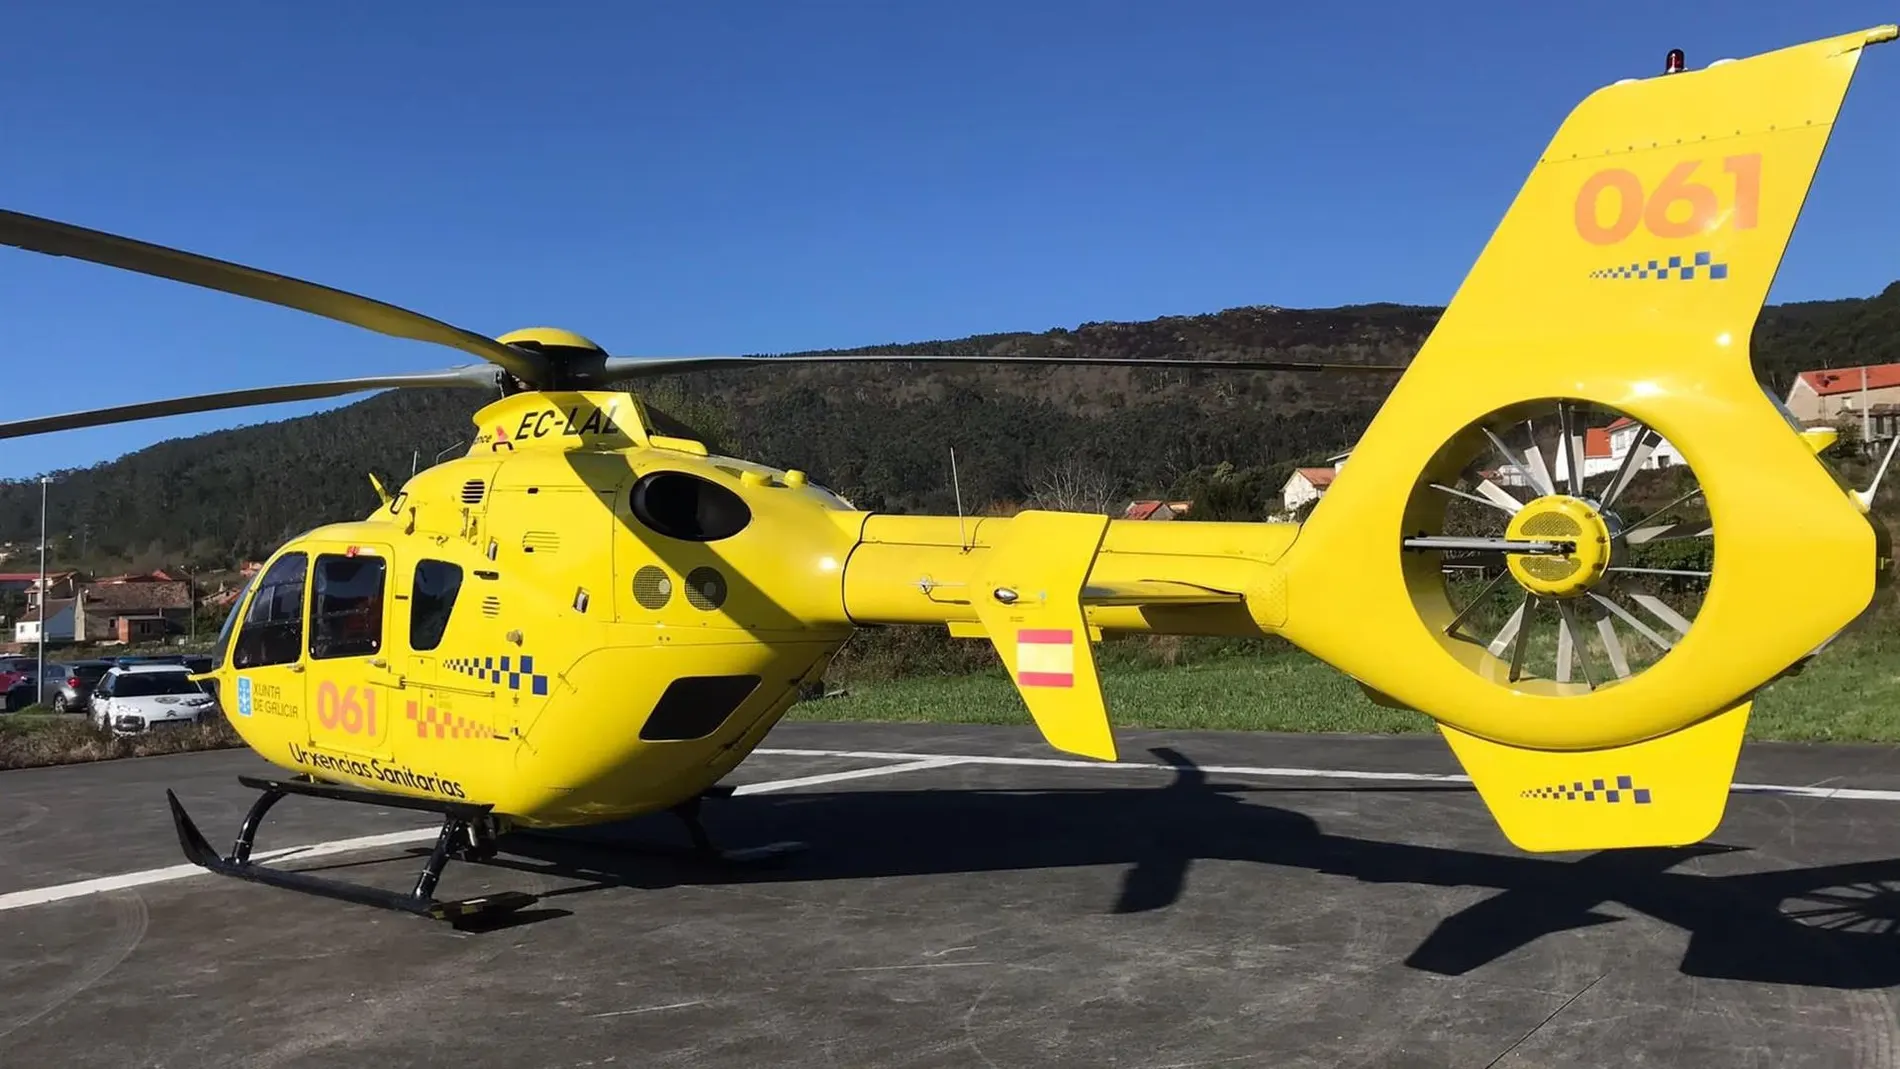 El hombre, de 78 años y vecino de Coristanco, fue trasladado en helicóptero medicalizado al Complexo Hospitalario Universitario de A Coruña.